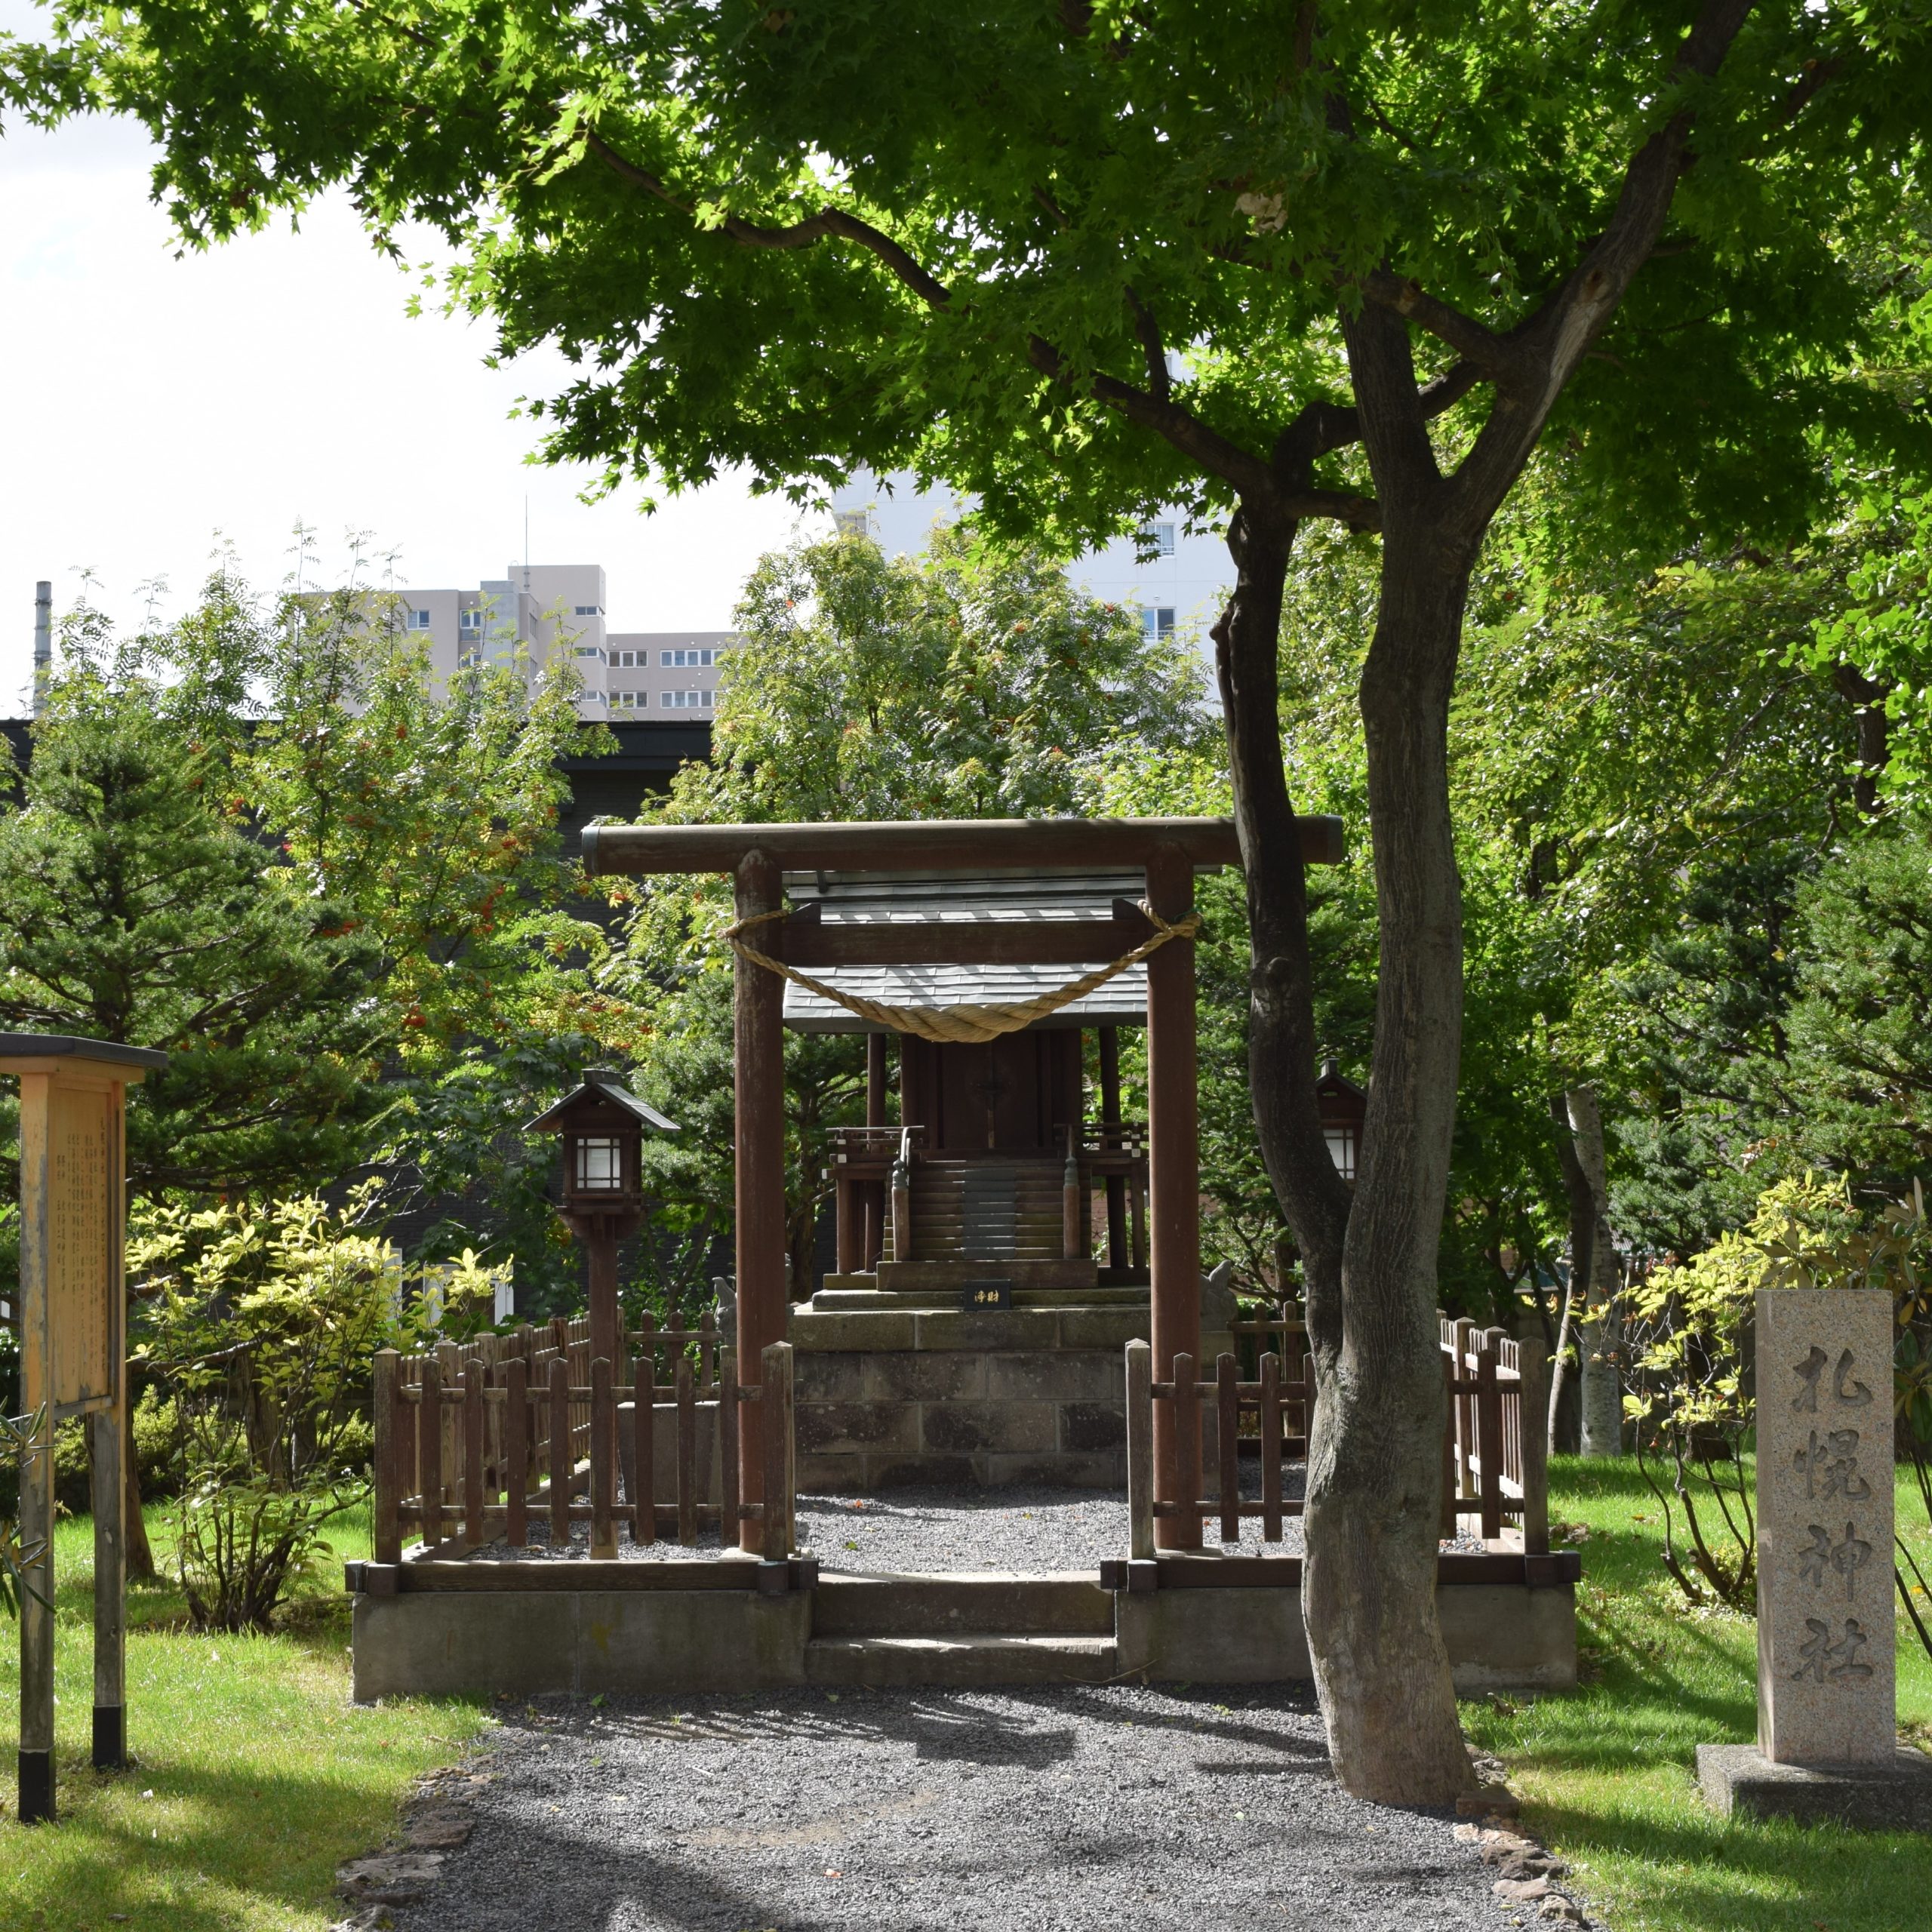 札幌神社